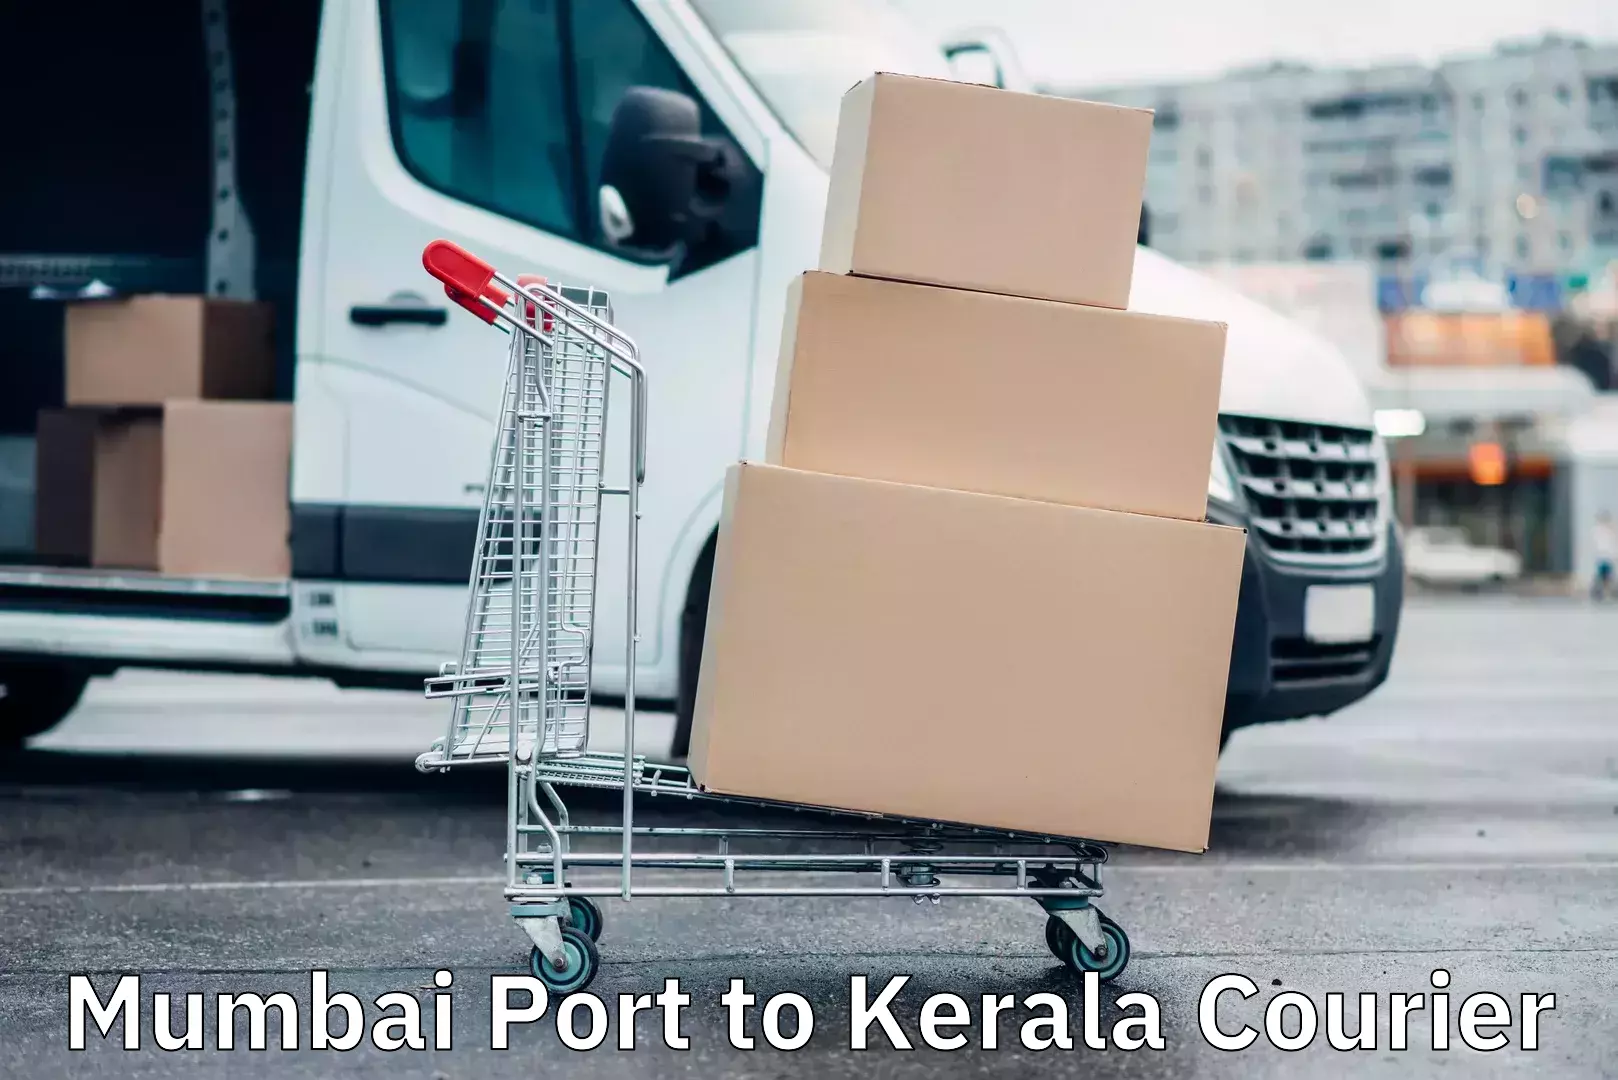 Integrated logistics solutions Mumbai Port to Kerala